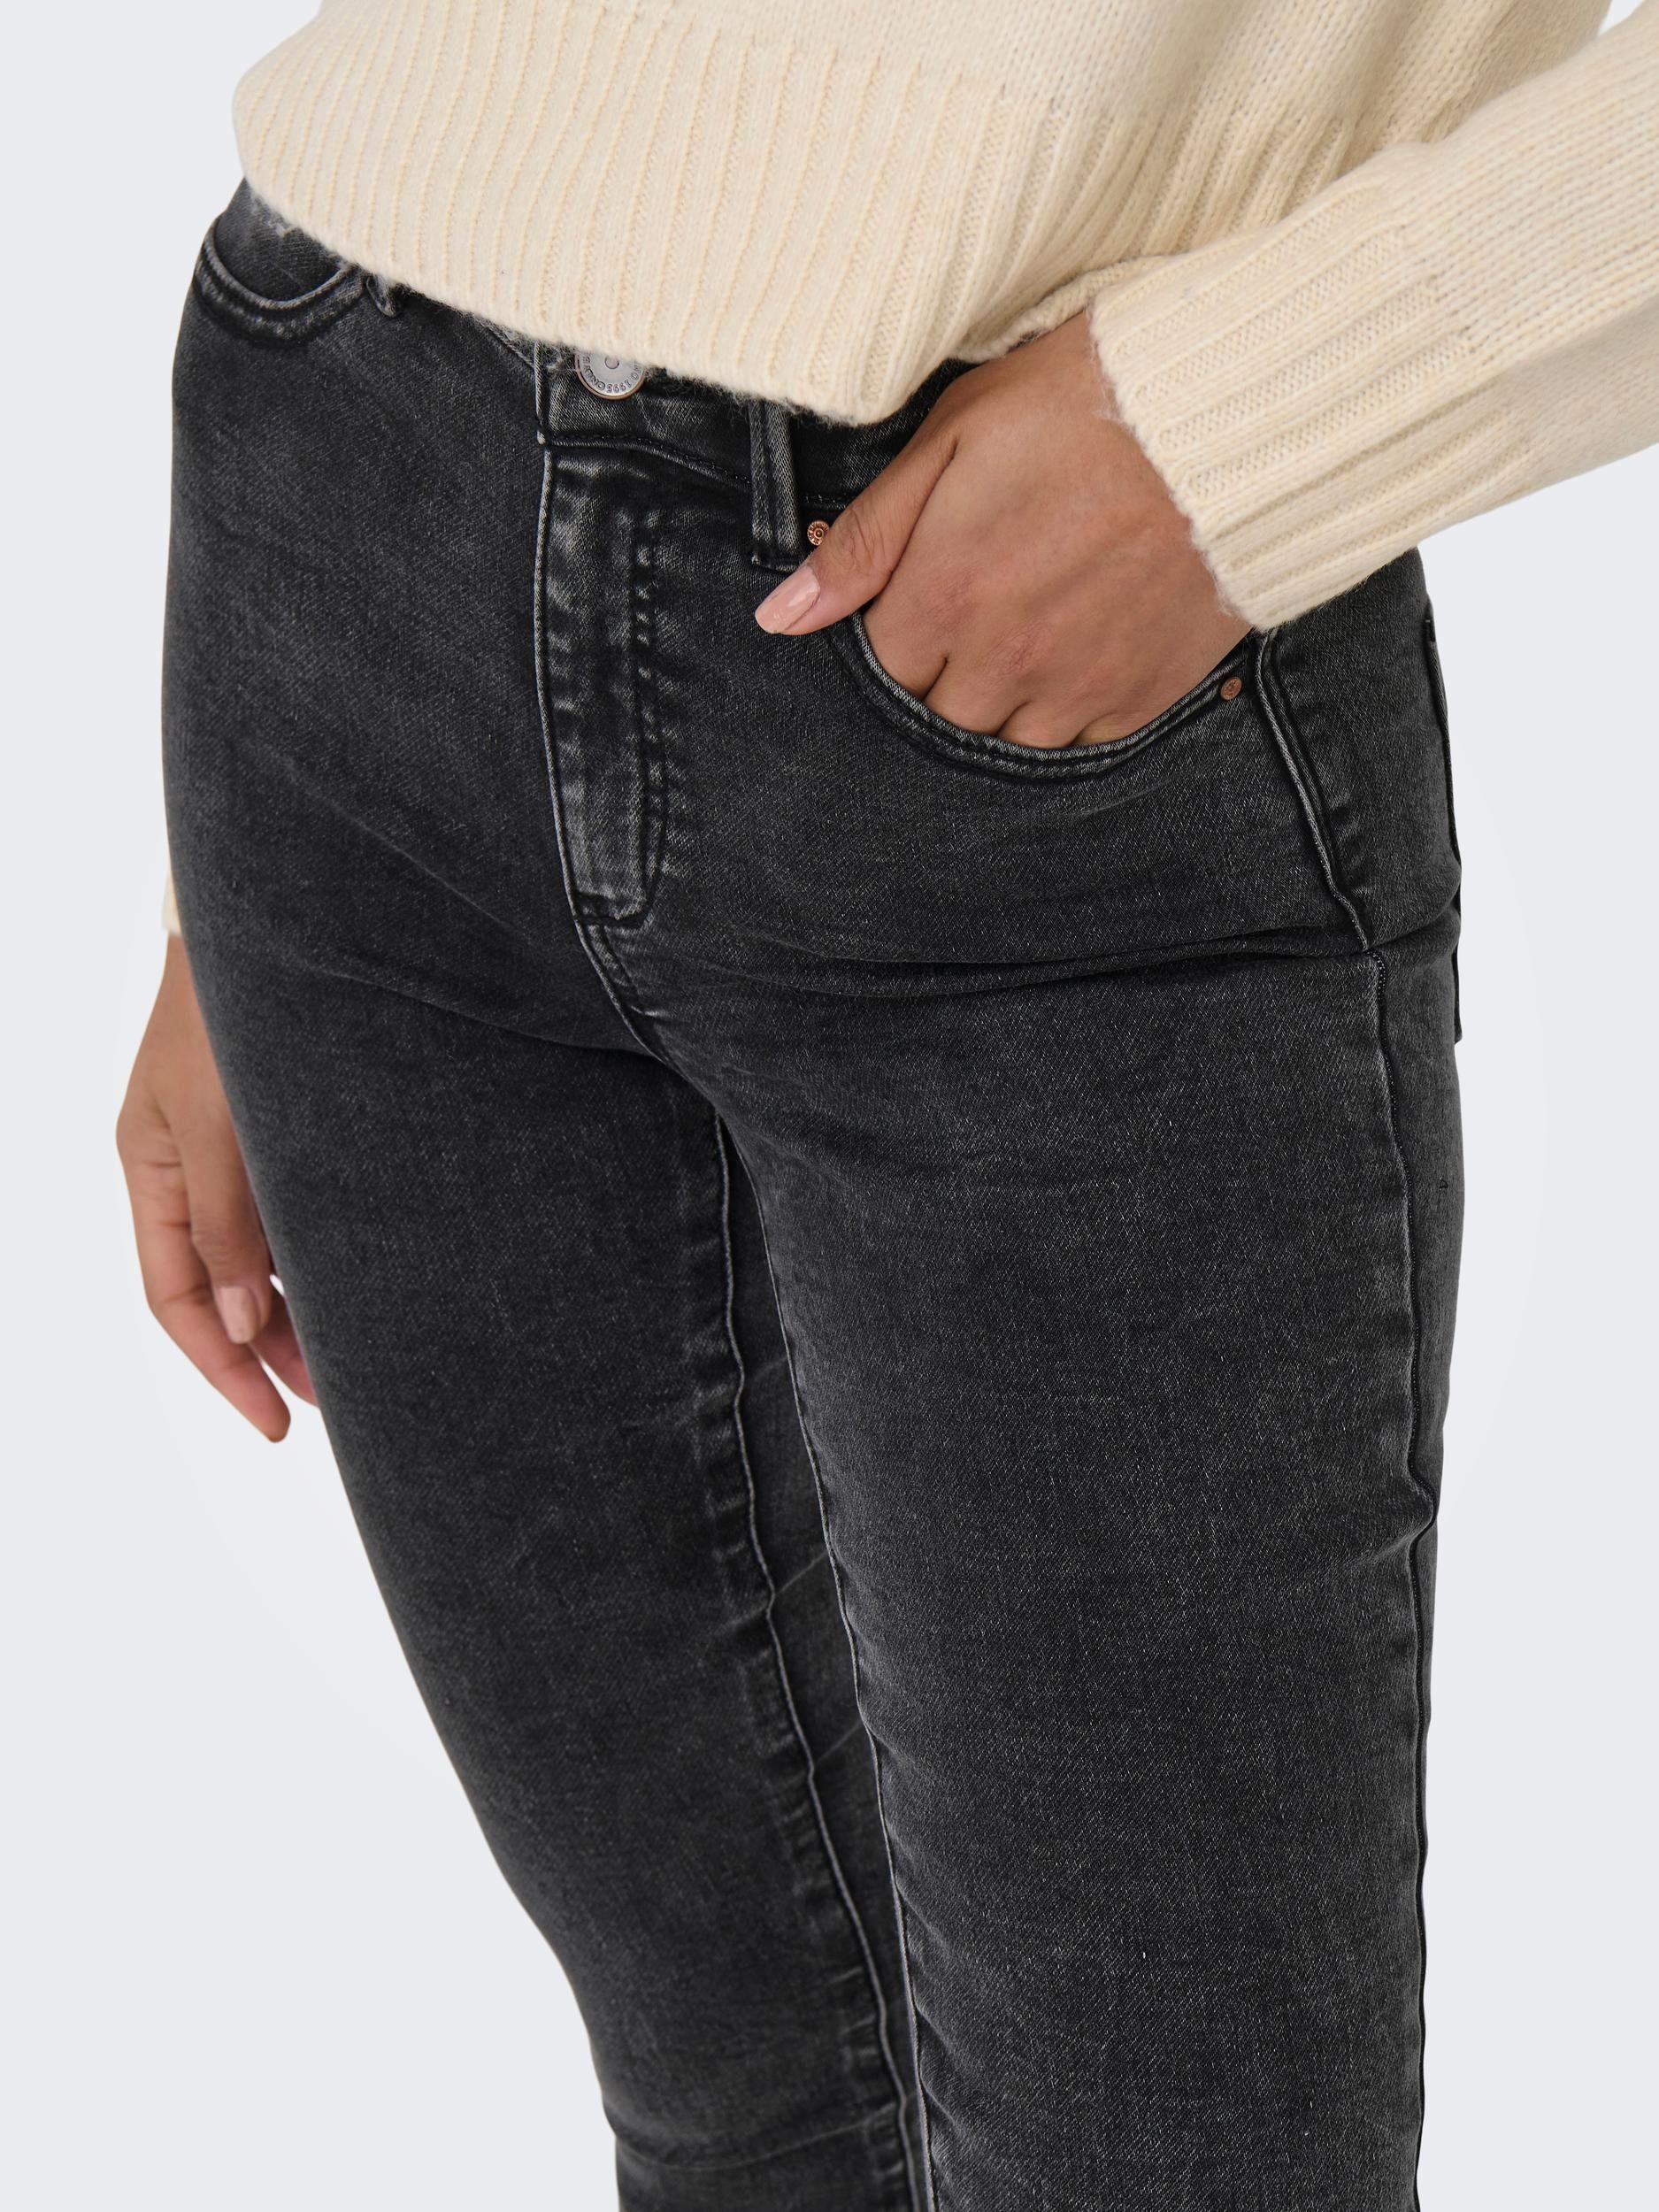 ONLY 5-Pocket-Jeans Black Washed JOGG HIGH DNM ONLFOREVER HW SKINNY